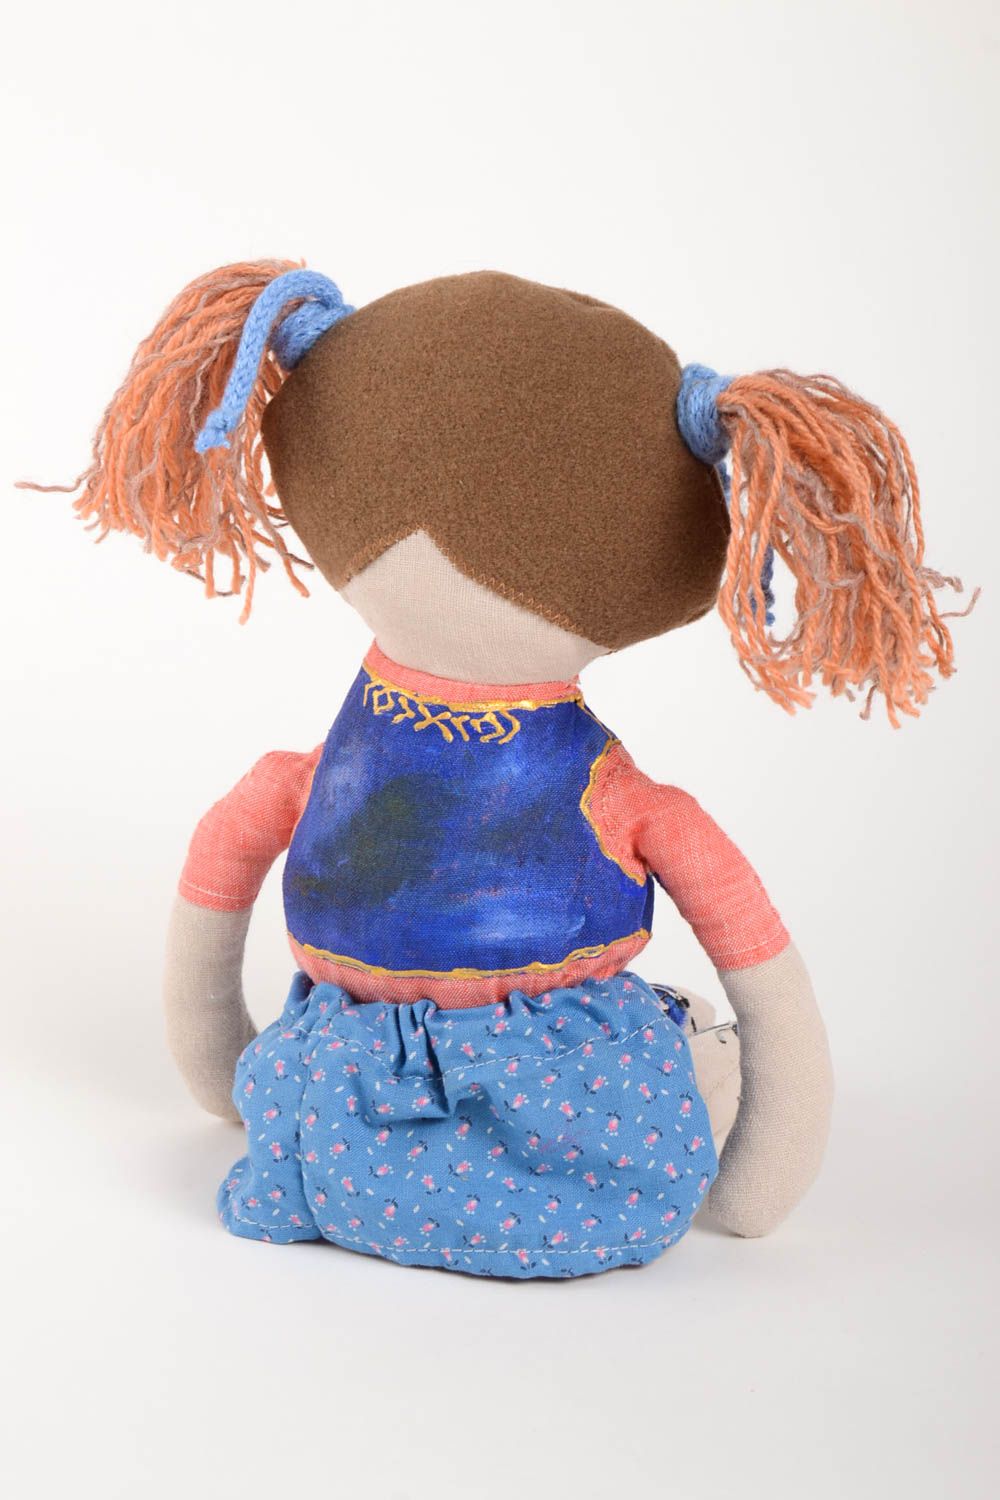 Handmade soft doll girl doll designer toys for children gifts for kids photo 4